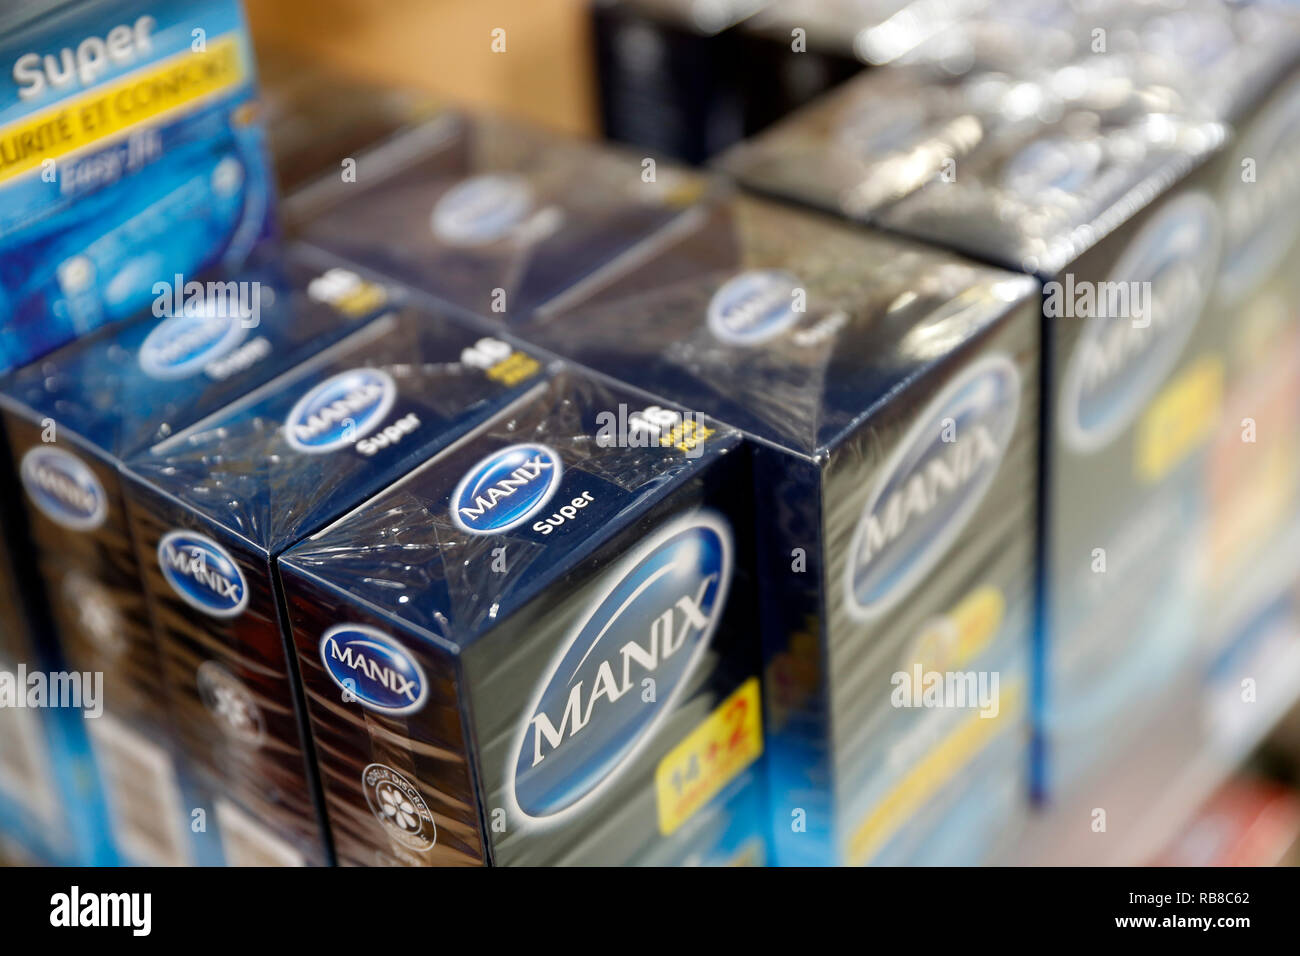 Pharmacy. Condoms. France. Stock Photo